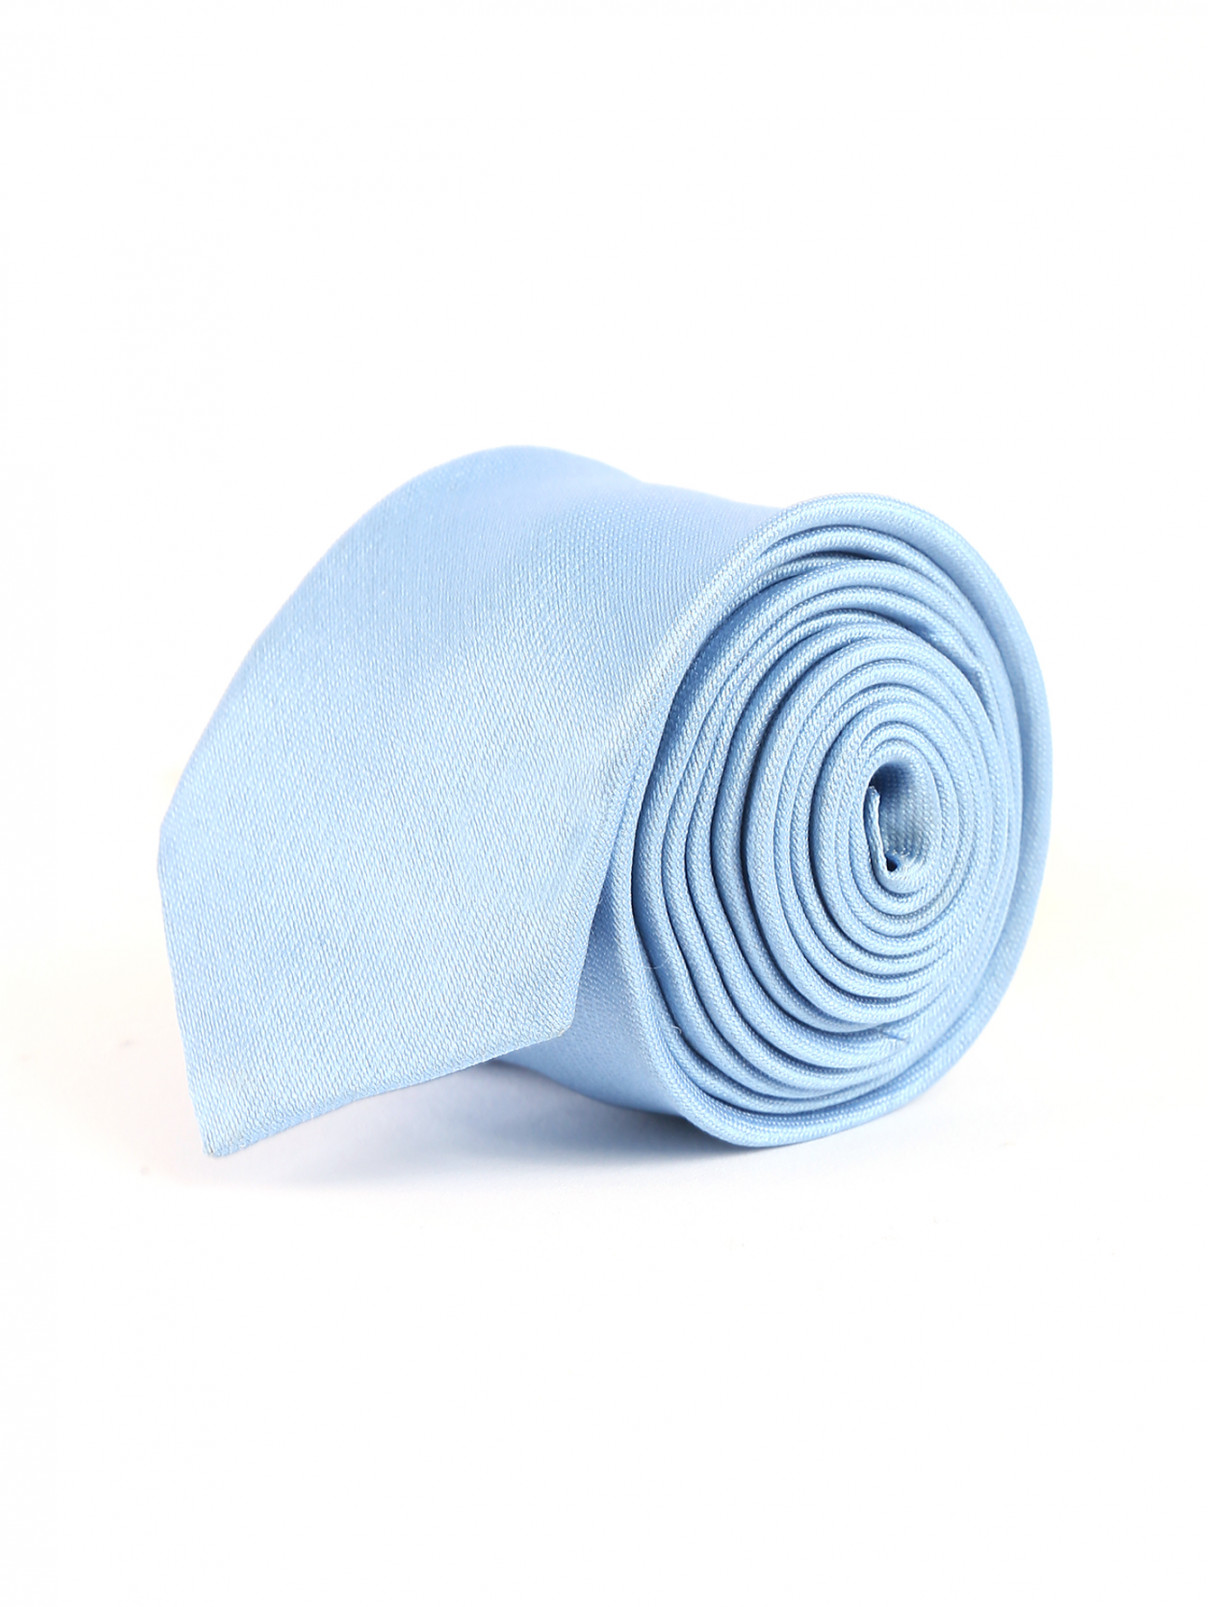 Узкий галстук из шелковистого материала MiMiSol  –  Общий вид  – Цвет:  Синий